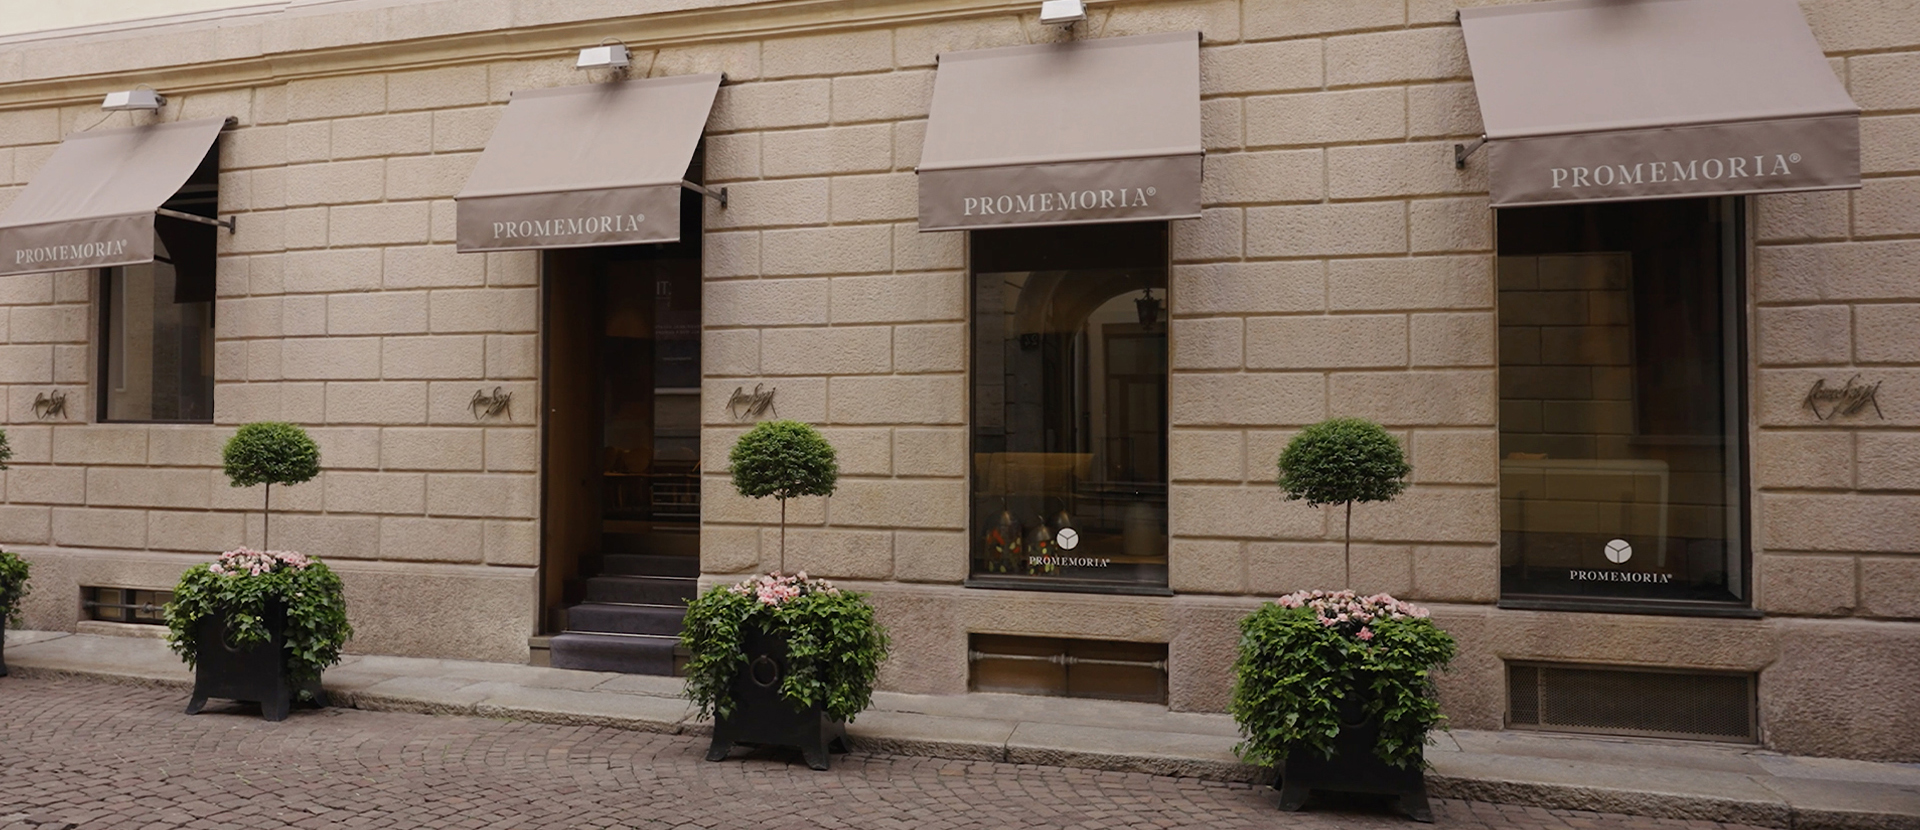 Promemoria's monobrand showroom in Milan fashion district | Promemoria